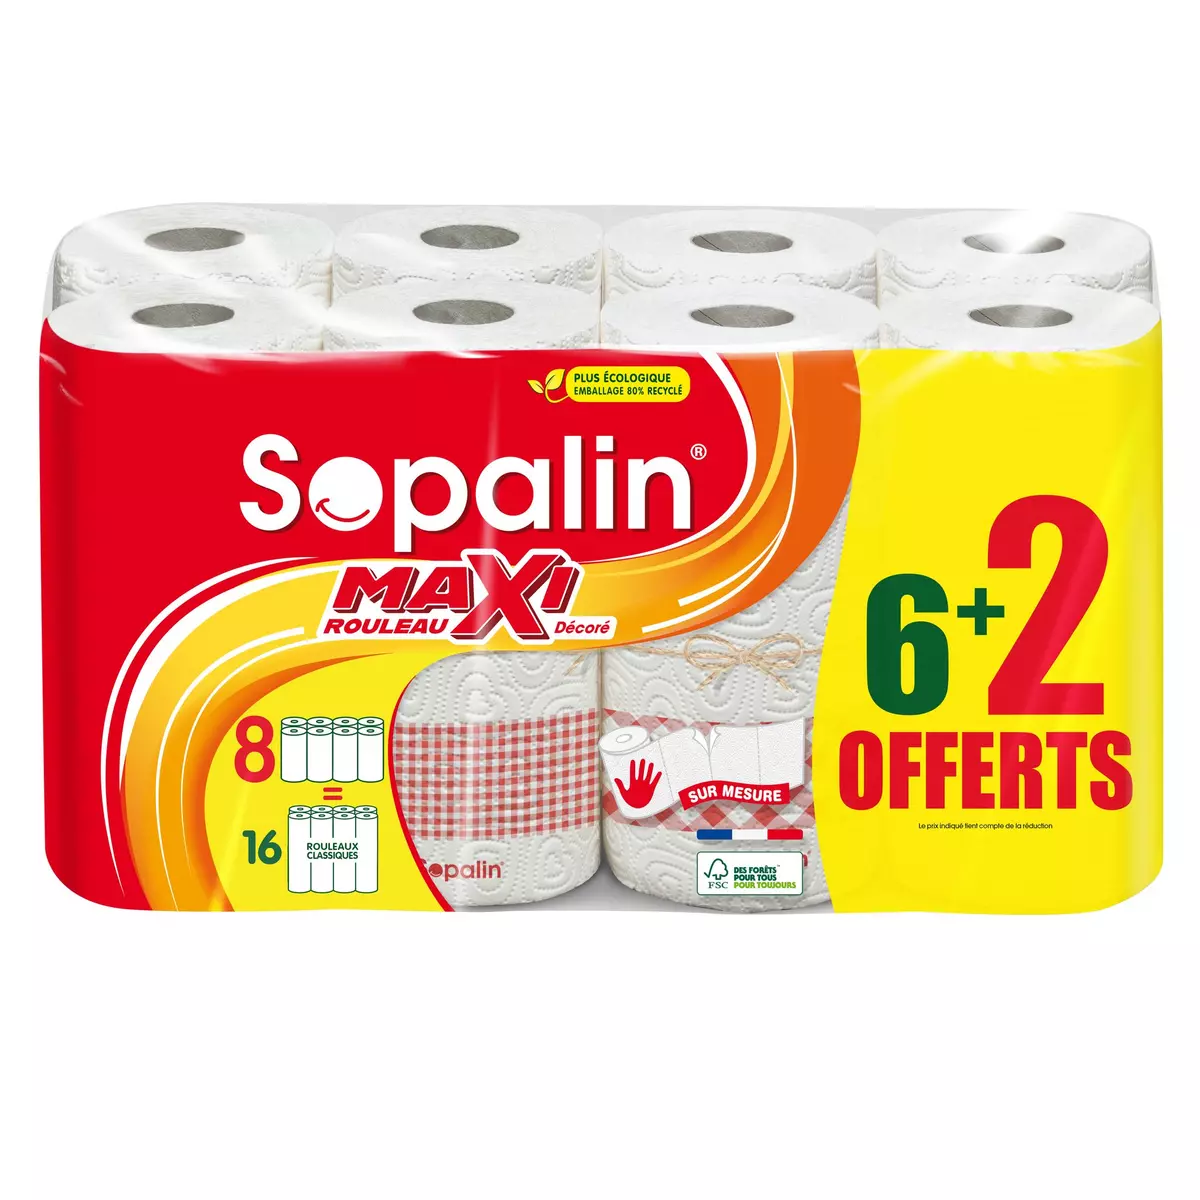 SOPALIN Maxi rouleau essuie tout sur mesure demi feuille décoré 6 rouleaux +2 offerts